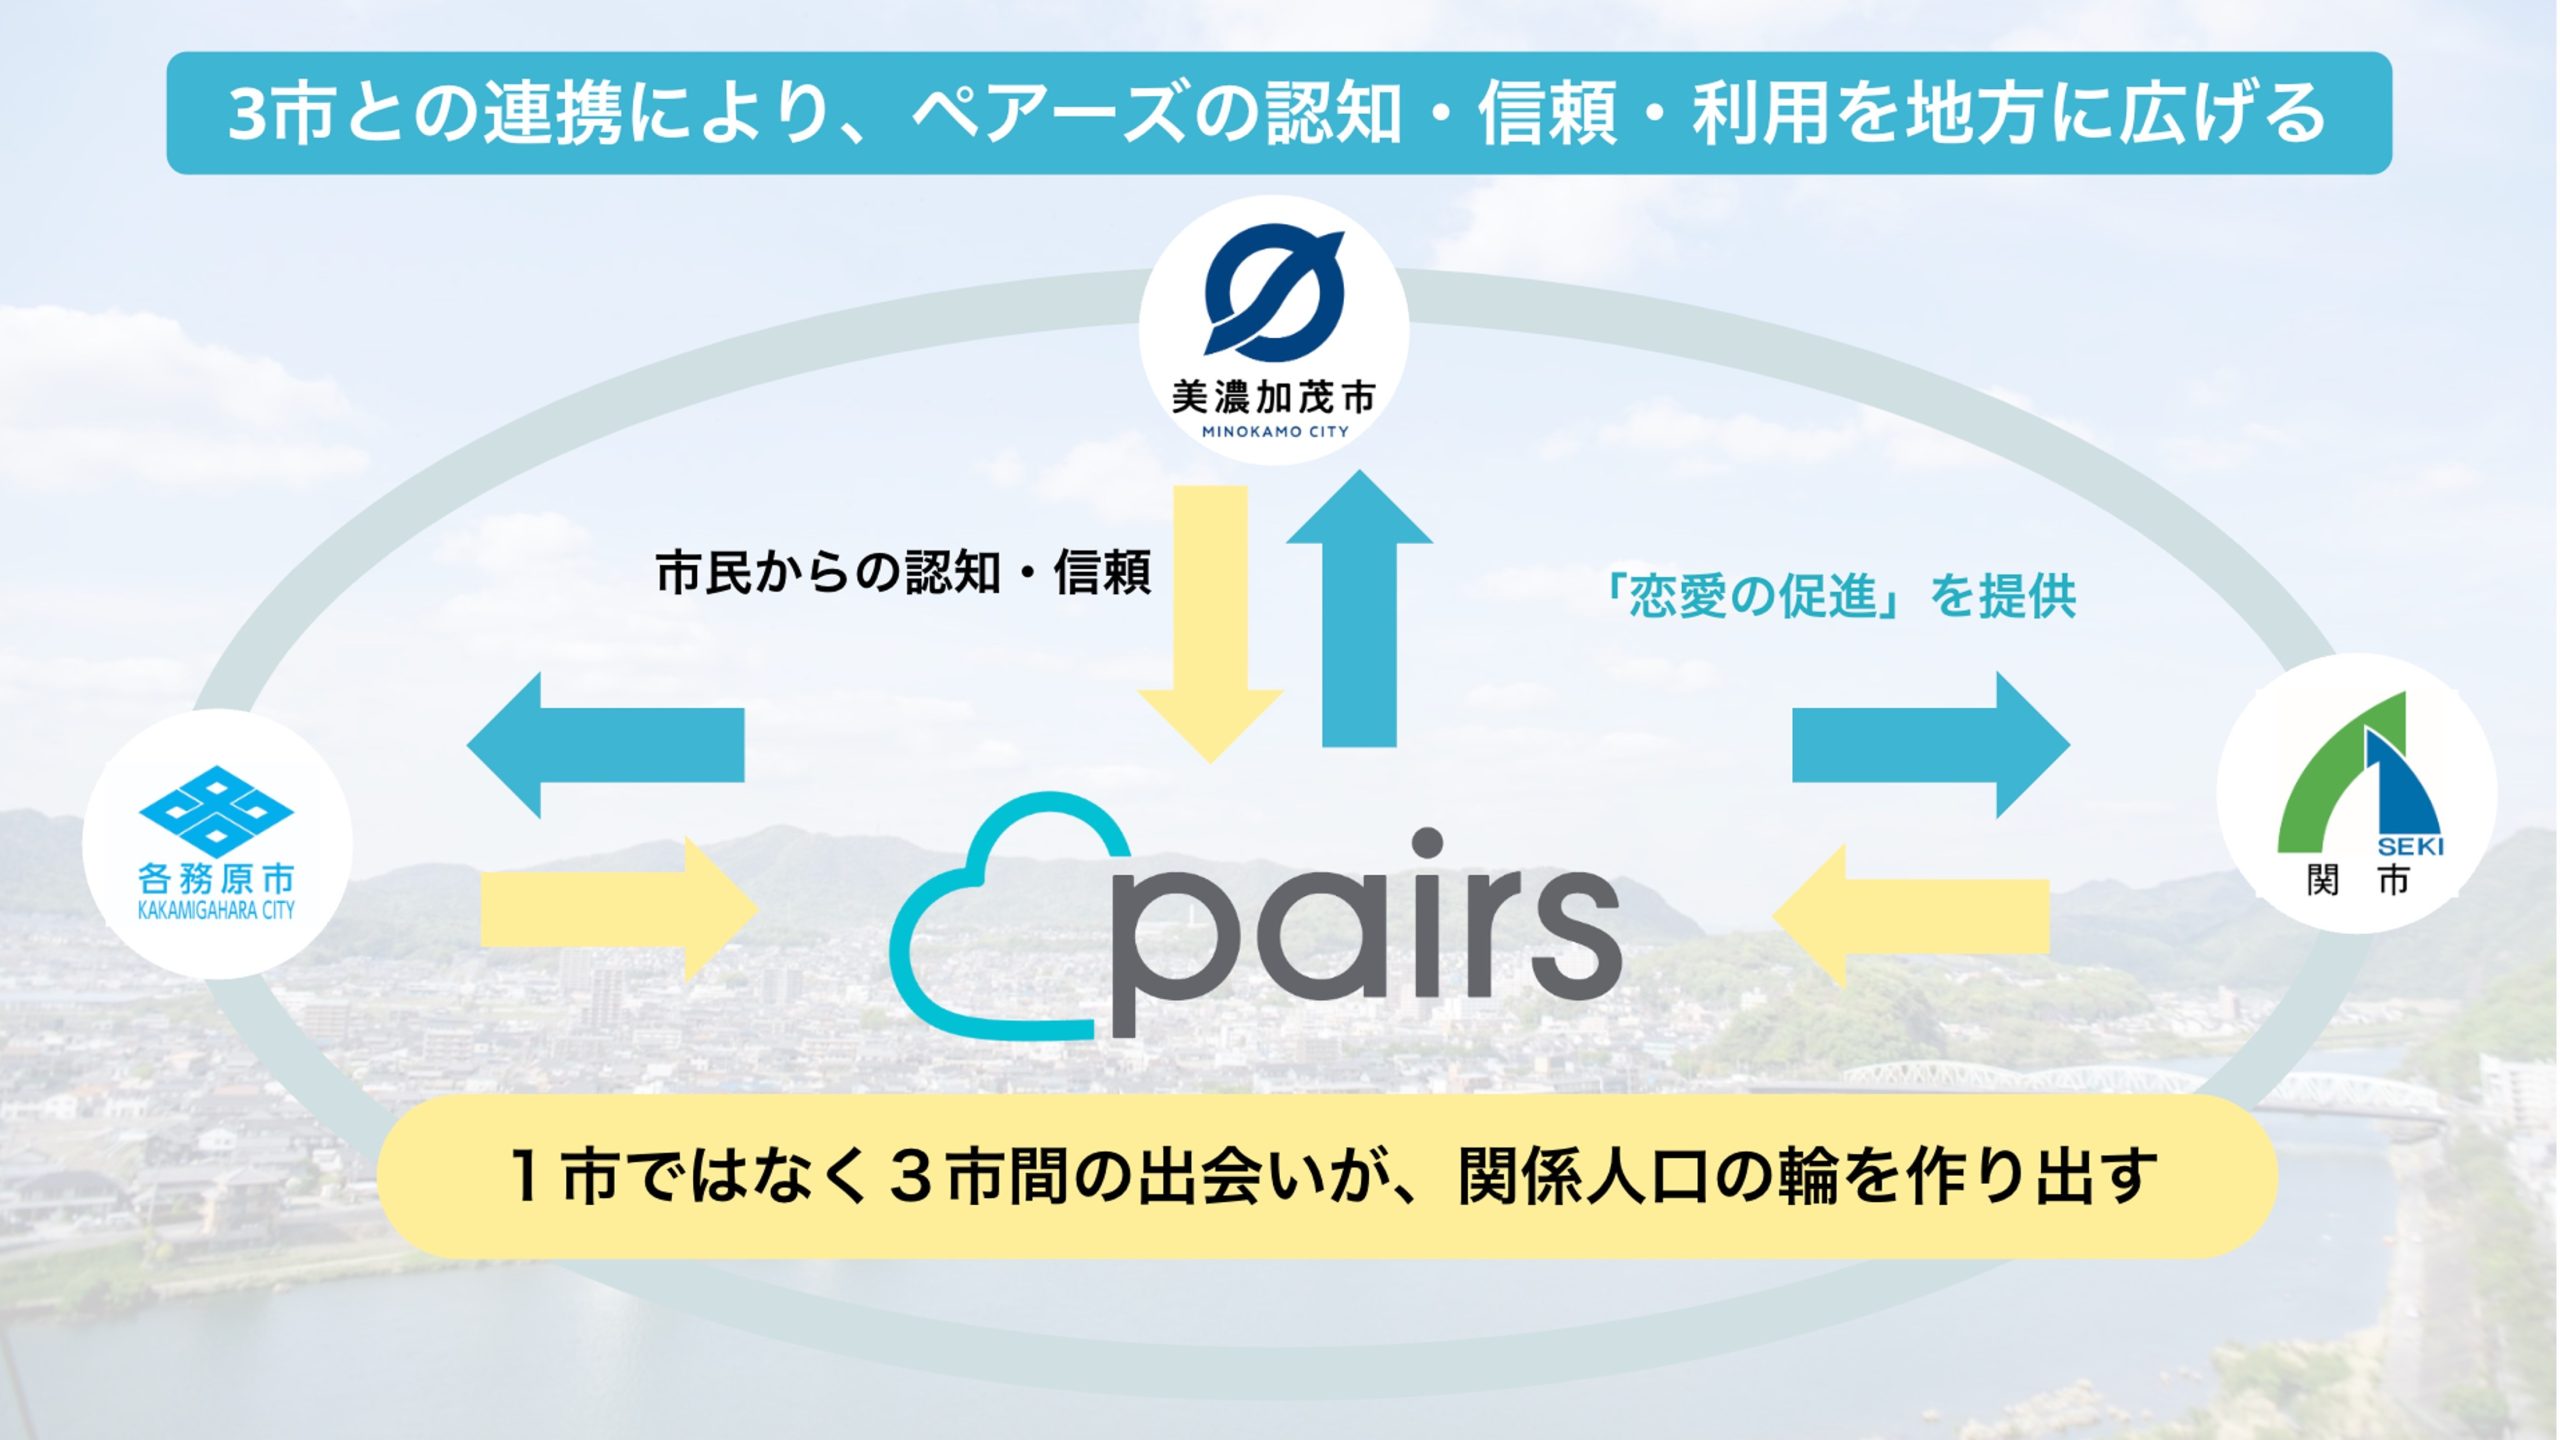 岐阜県、「Pairs」と手を組み、地域活性化となる「となりマッチング」を実施[ニュース]